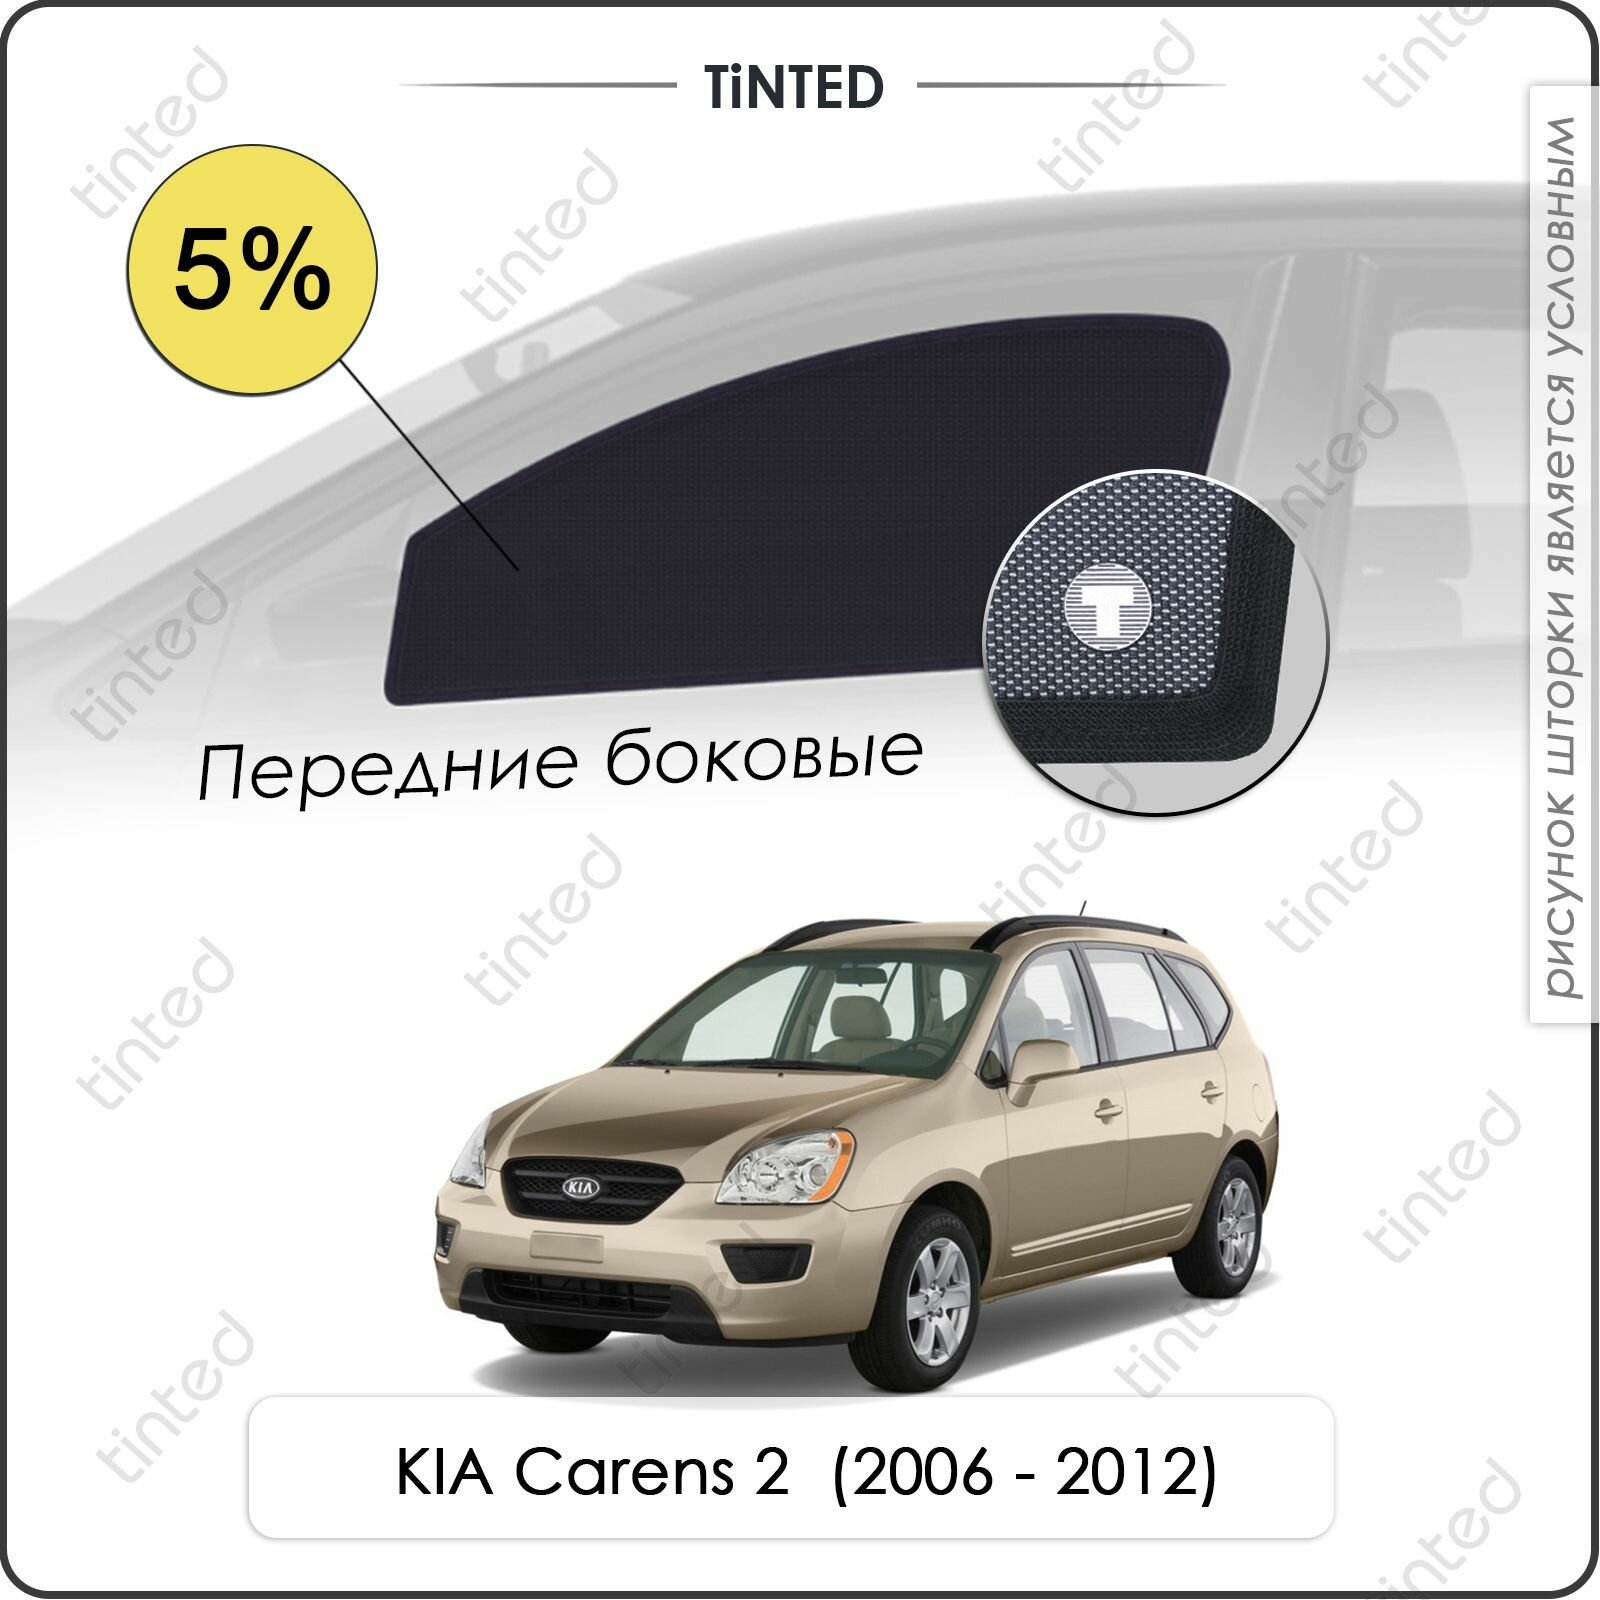 Шторки на автомобиль солнцезащитные KIA Carens 2 Минивэн 5дв. (2006 - 2012) на передние двери 5%, сетки от солнца в машину КИА каренс, Каркасные автошторки Premium